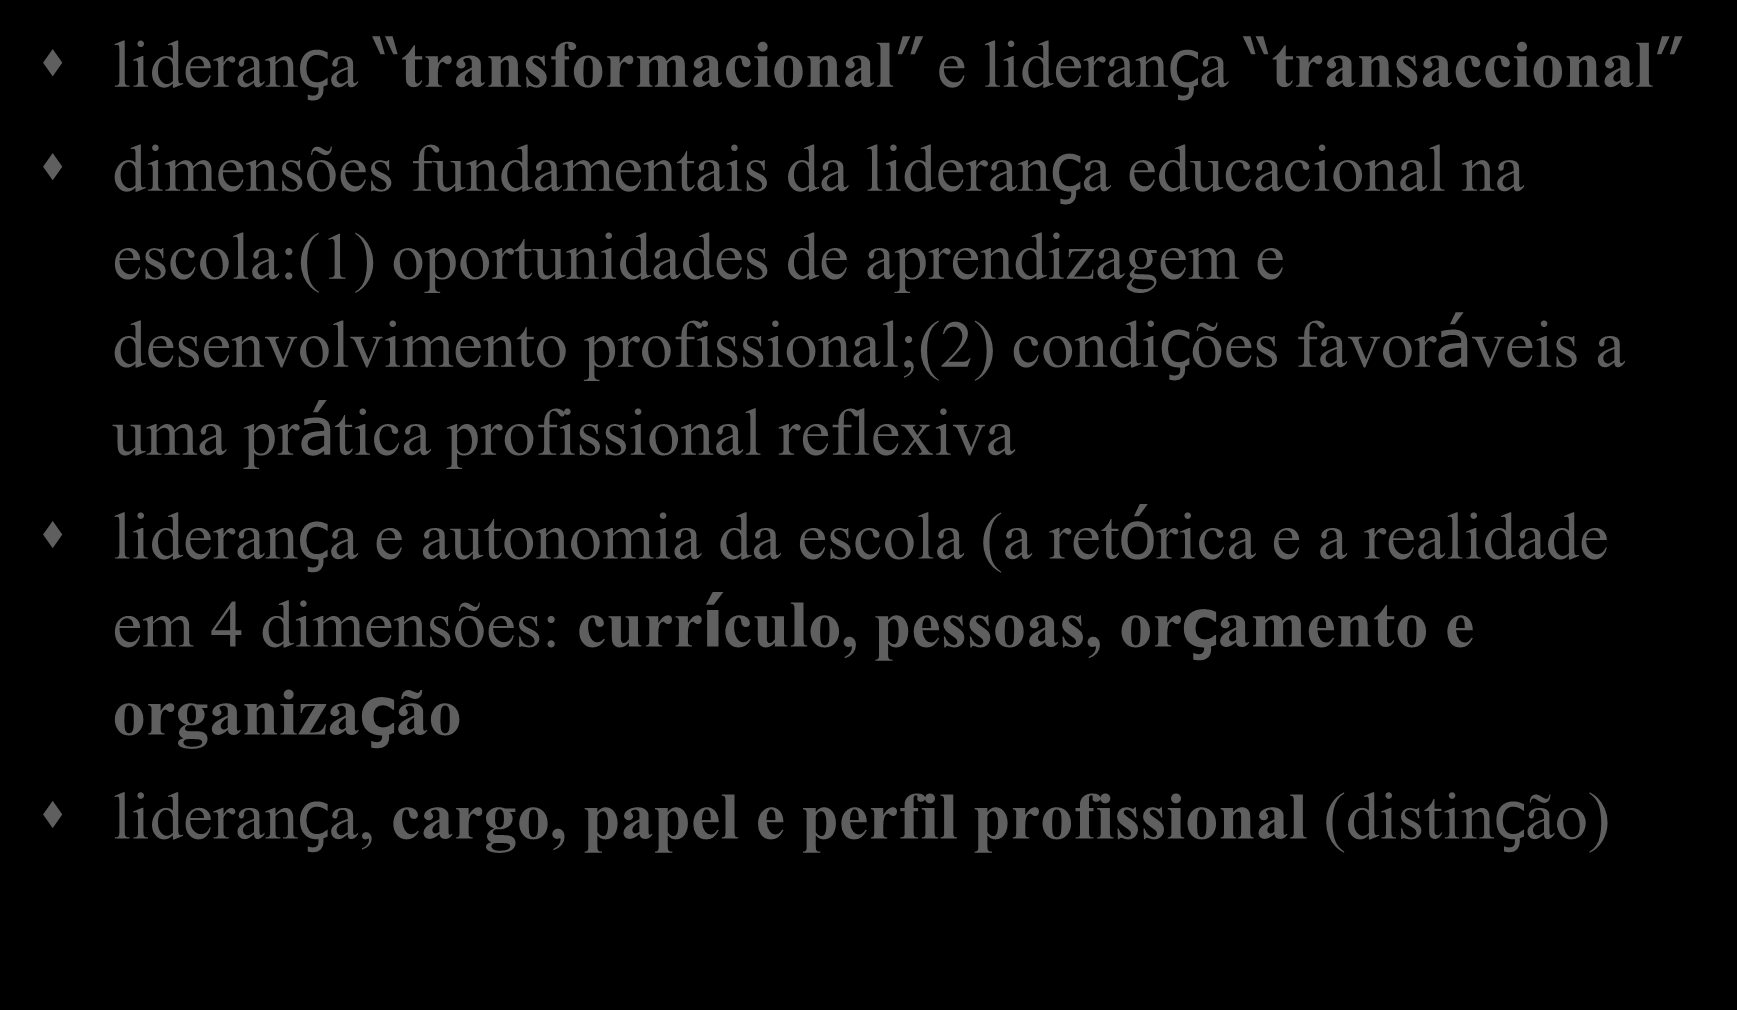 Liderança e gestão (2) liderança transformacional e liderança transaccional dimensões fundamentais da liderança educacional na escola:(1) oportunidades de aprendizagem e desenvolvimento